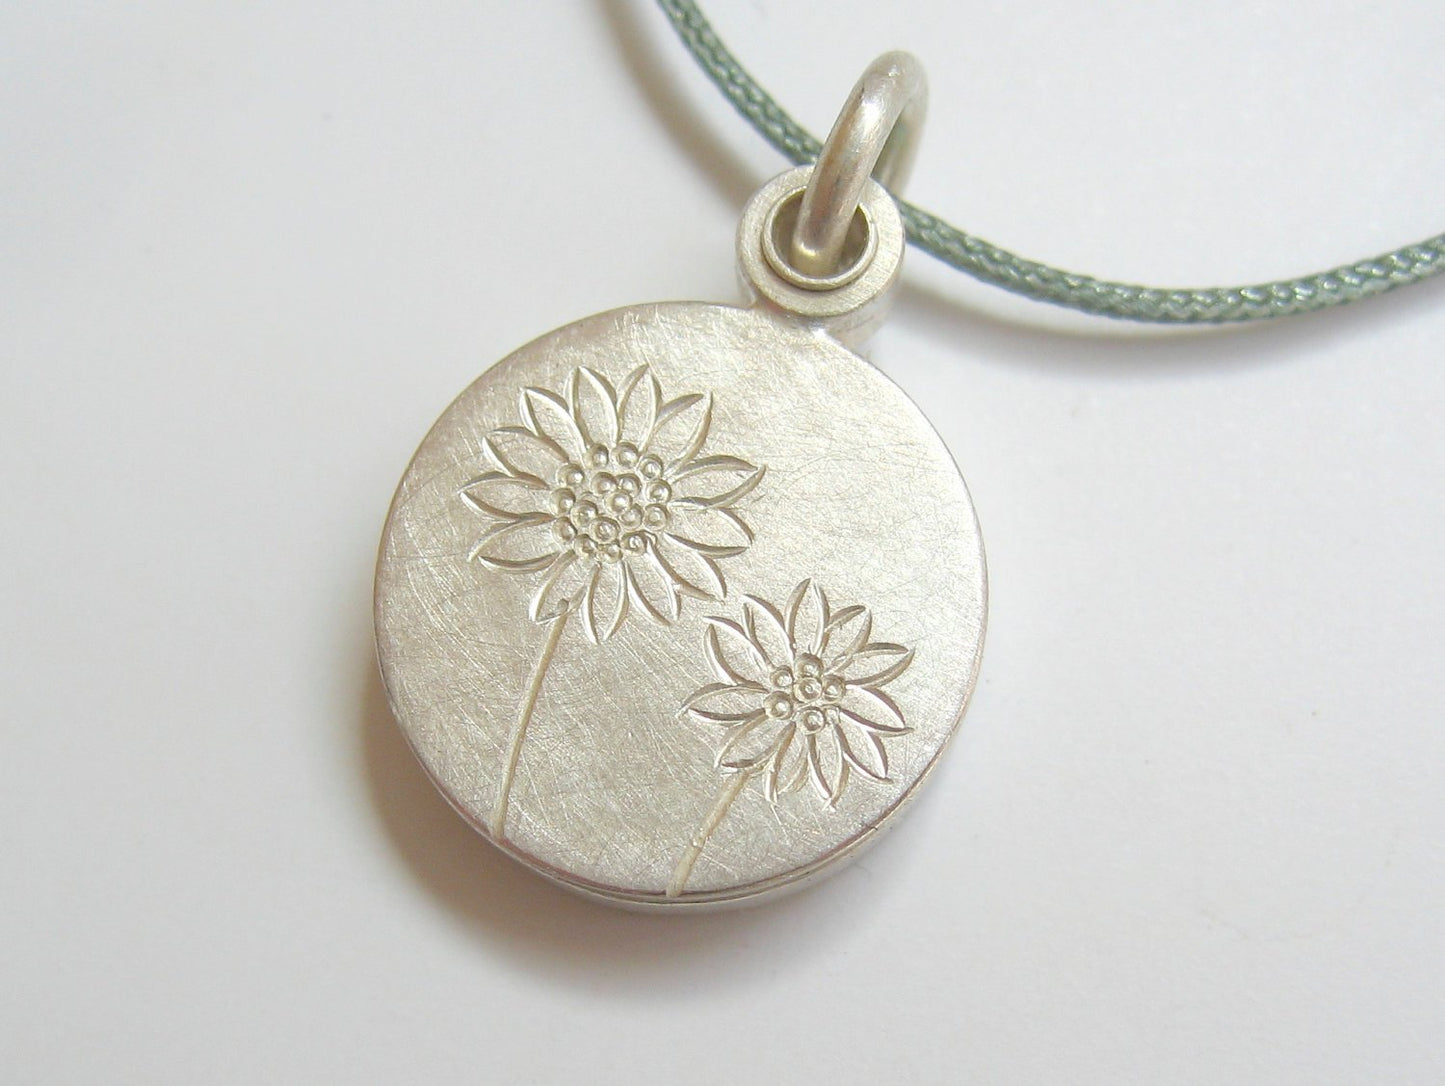 kleines Fotomedaillon mit Sonnenblumen aus Sterling Silber
